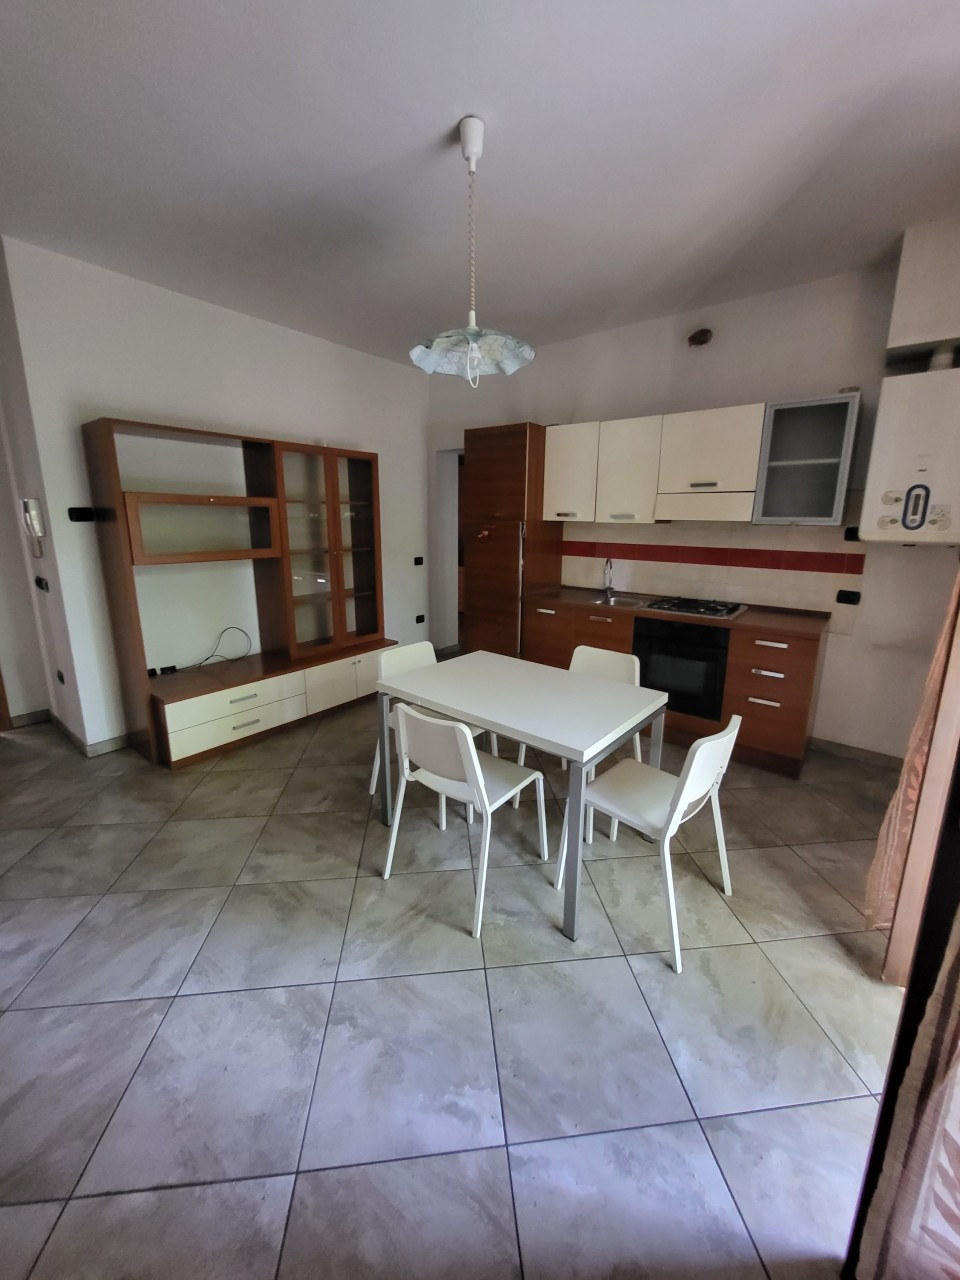 Appartamento in vendita a Bellaria Igea Marina, 3 locali, prezzo € 250.000 | PortaleAgenzieImmobiliari.it